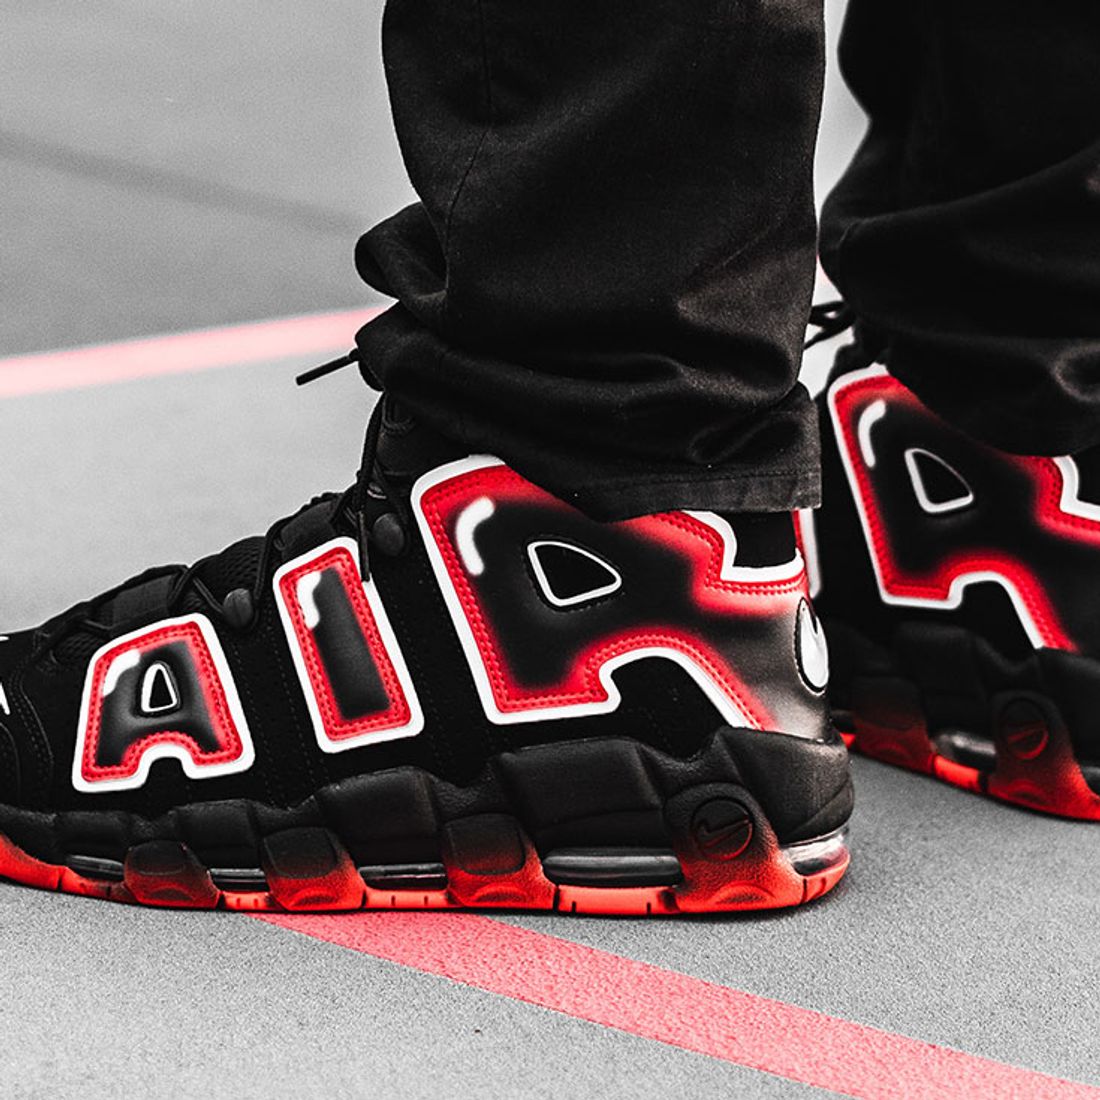 Laser Crimson' Lights Up the Nike Air More Uptempo 96 - Sneaker Freaker